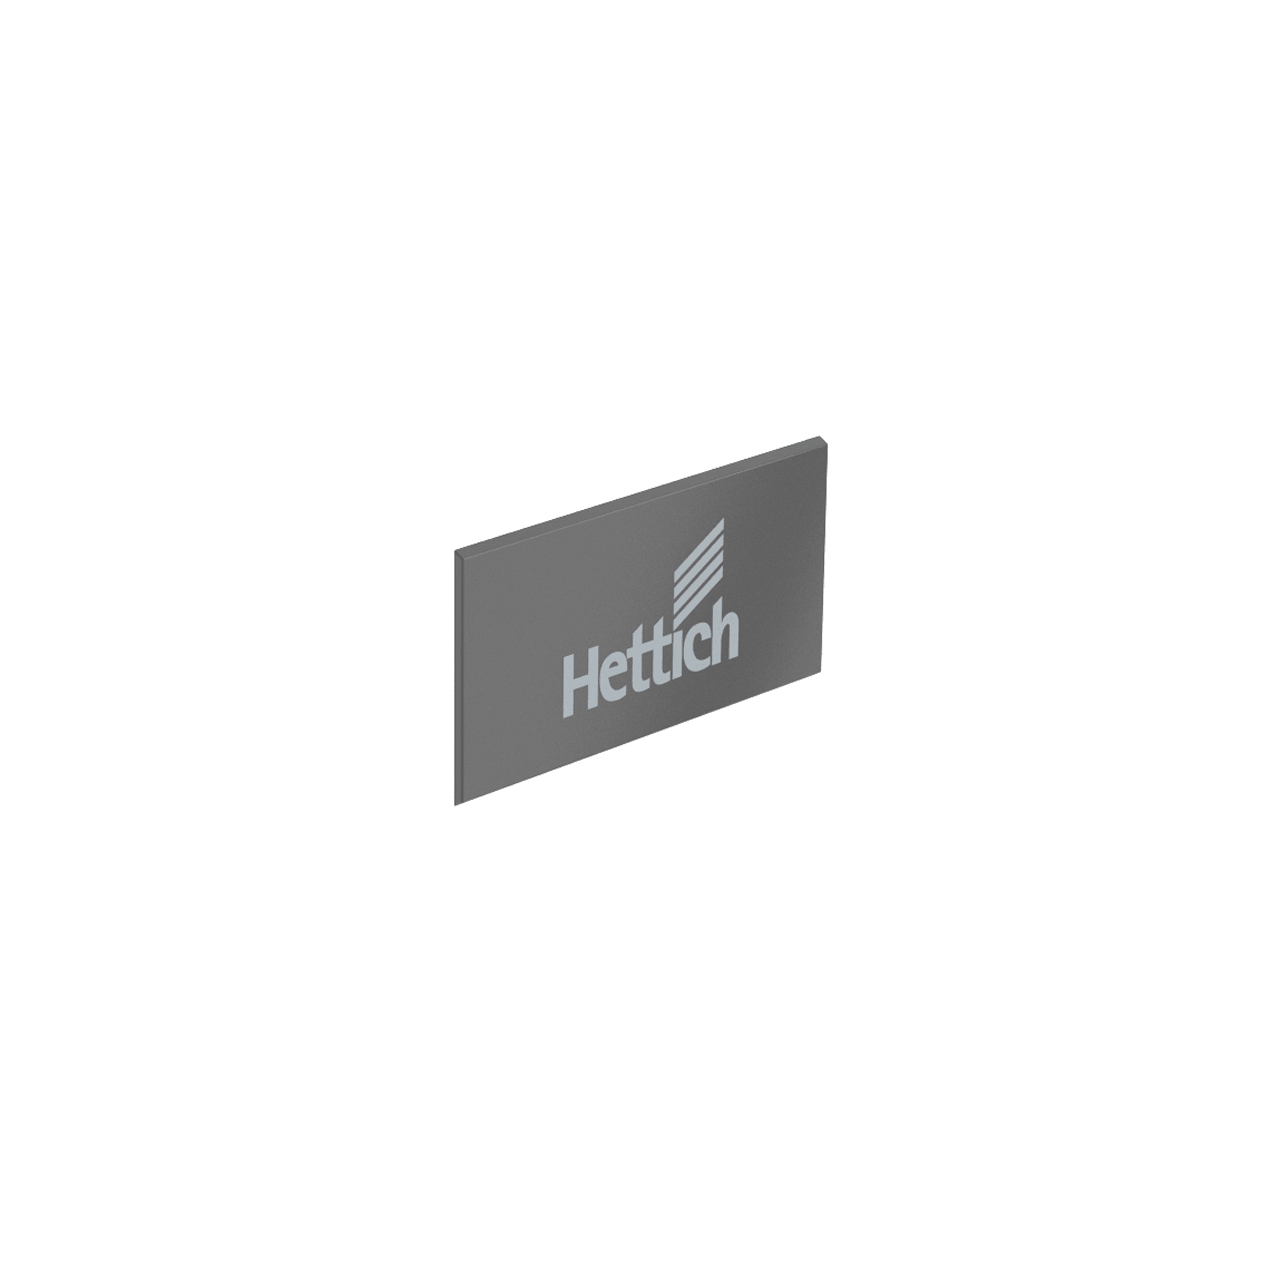 HETTICH ArciTech Abdeckkappe, anthrazit mit Hettich Logo, 9123005